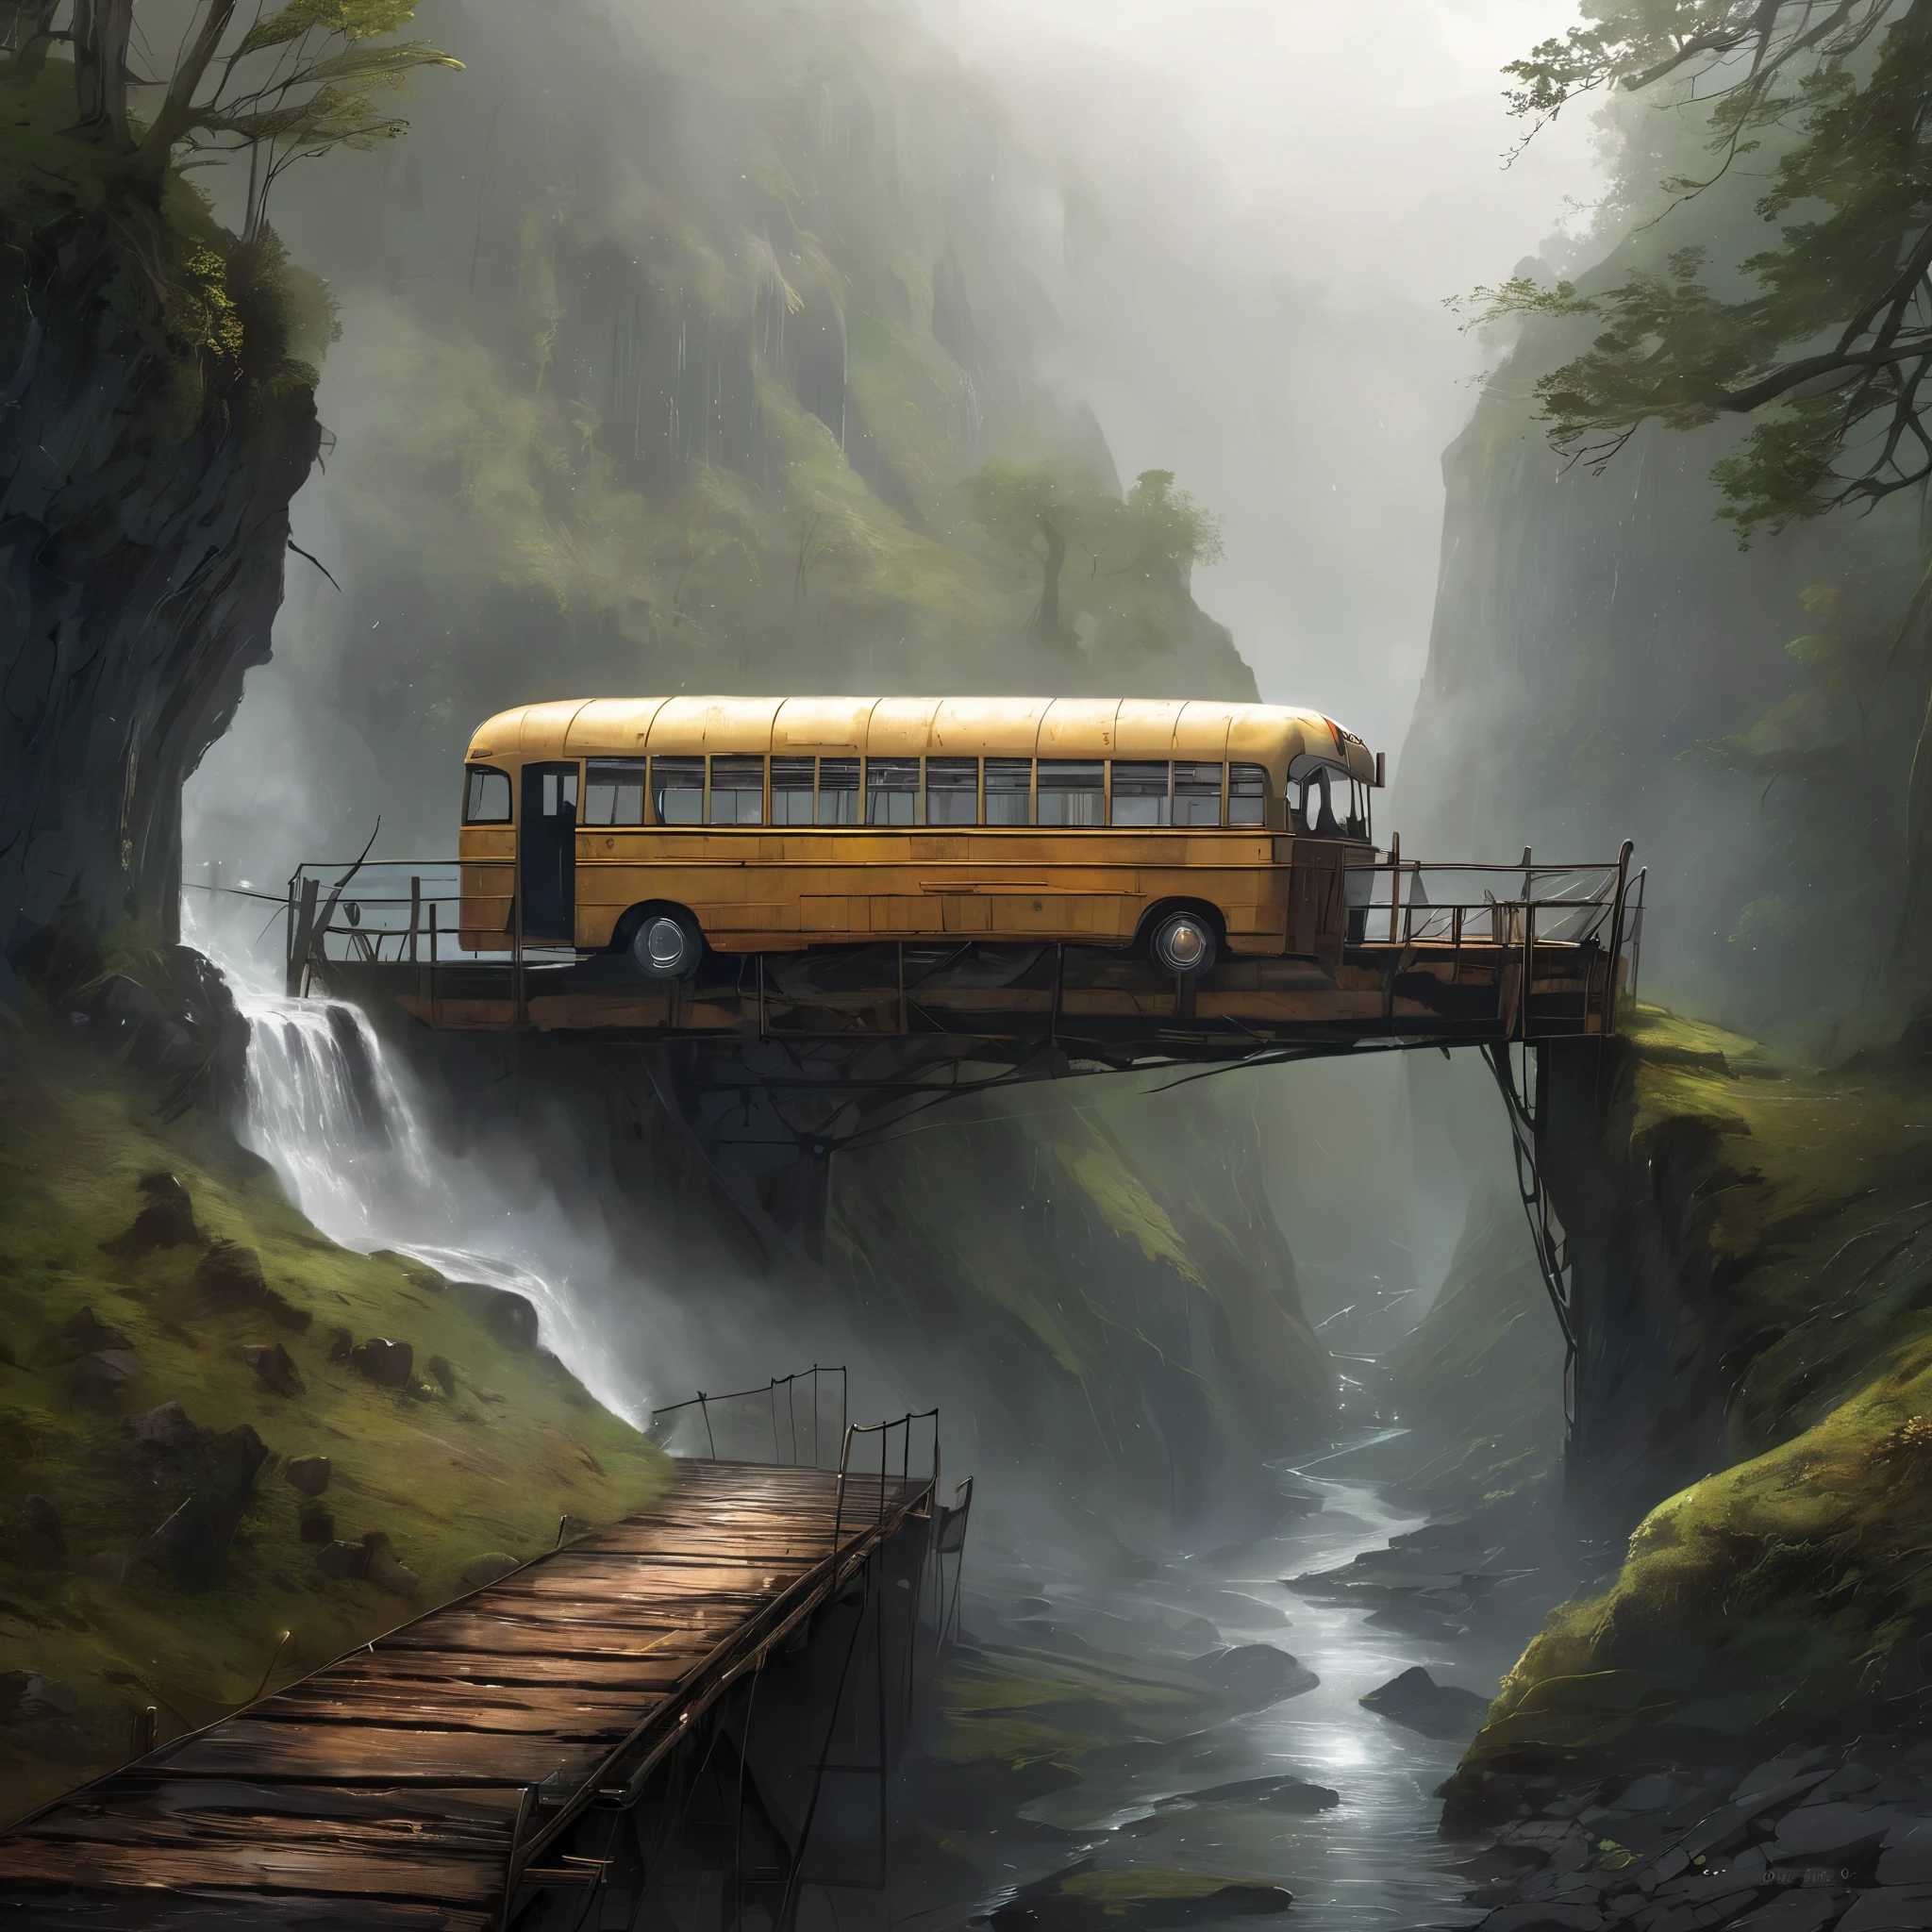 渓谷の橋として使われている古いバスのリアルな写真, 雨と霧の多い天気, 壮大, 天体の, エーテル, 絵画的な, すごい, 雄大な, 魔法の, ファンタジーアート, カバーアート, 夢のような